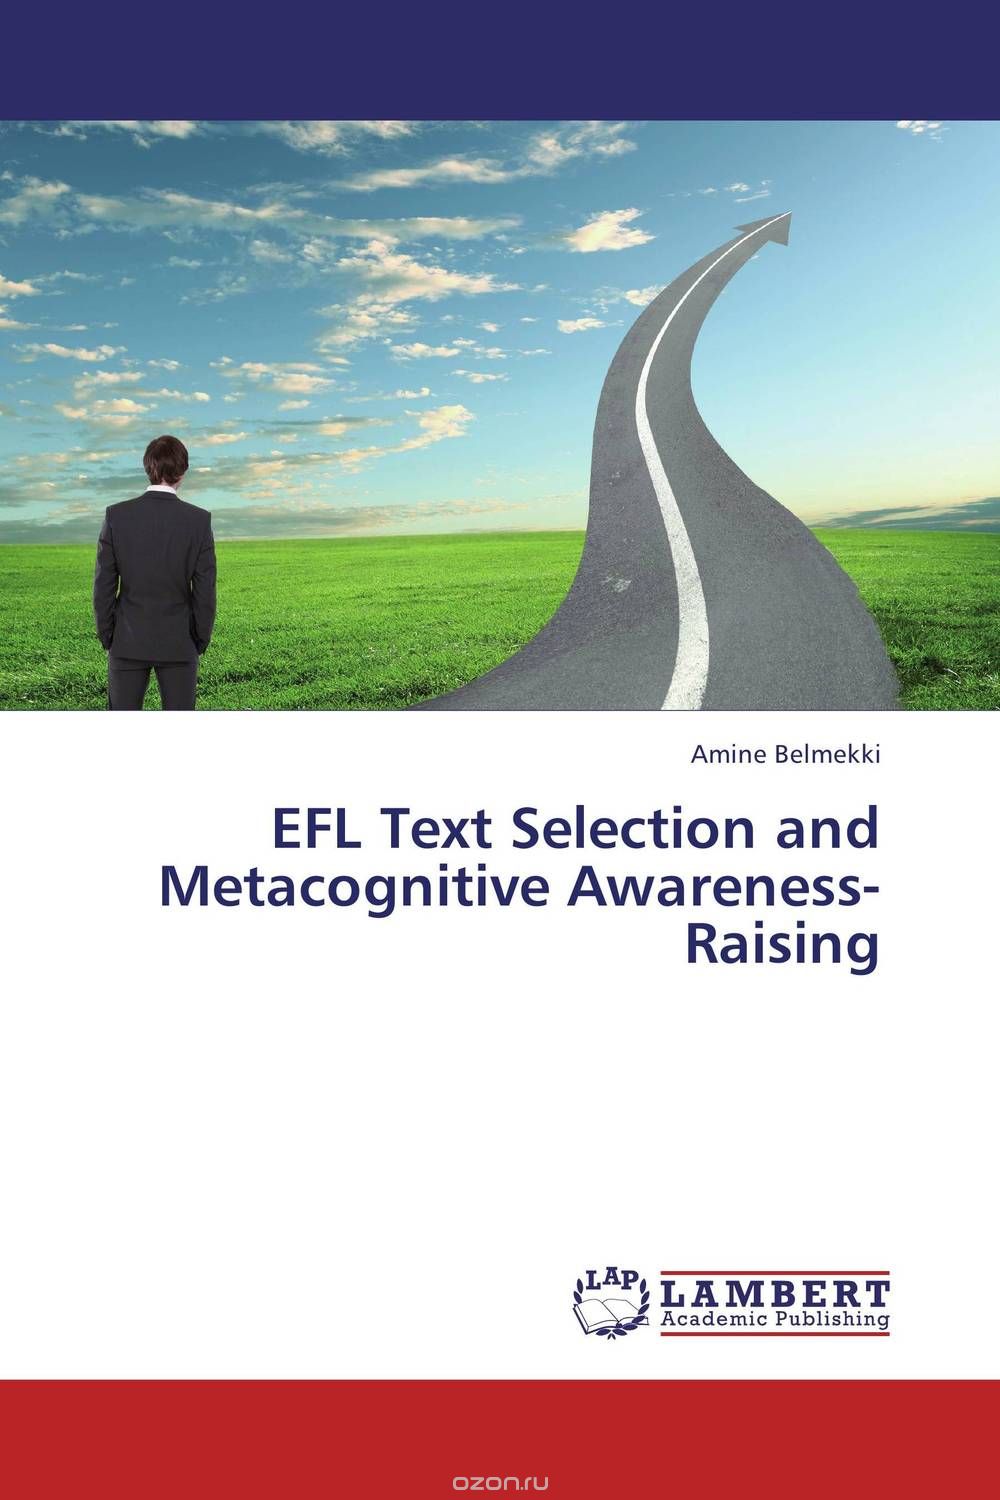 Скачать книгу "EFL Text Selection and Metacognitive Awareness-Raising"